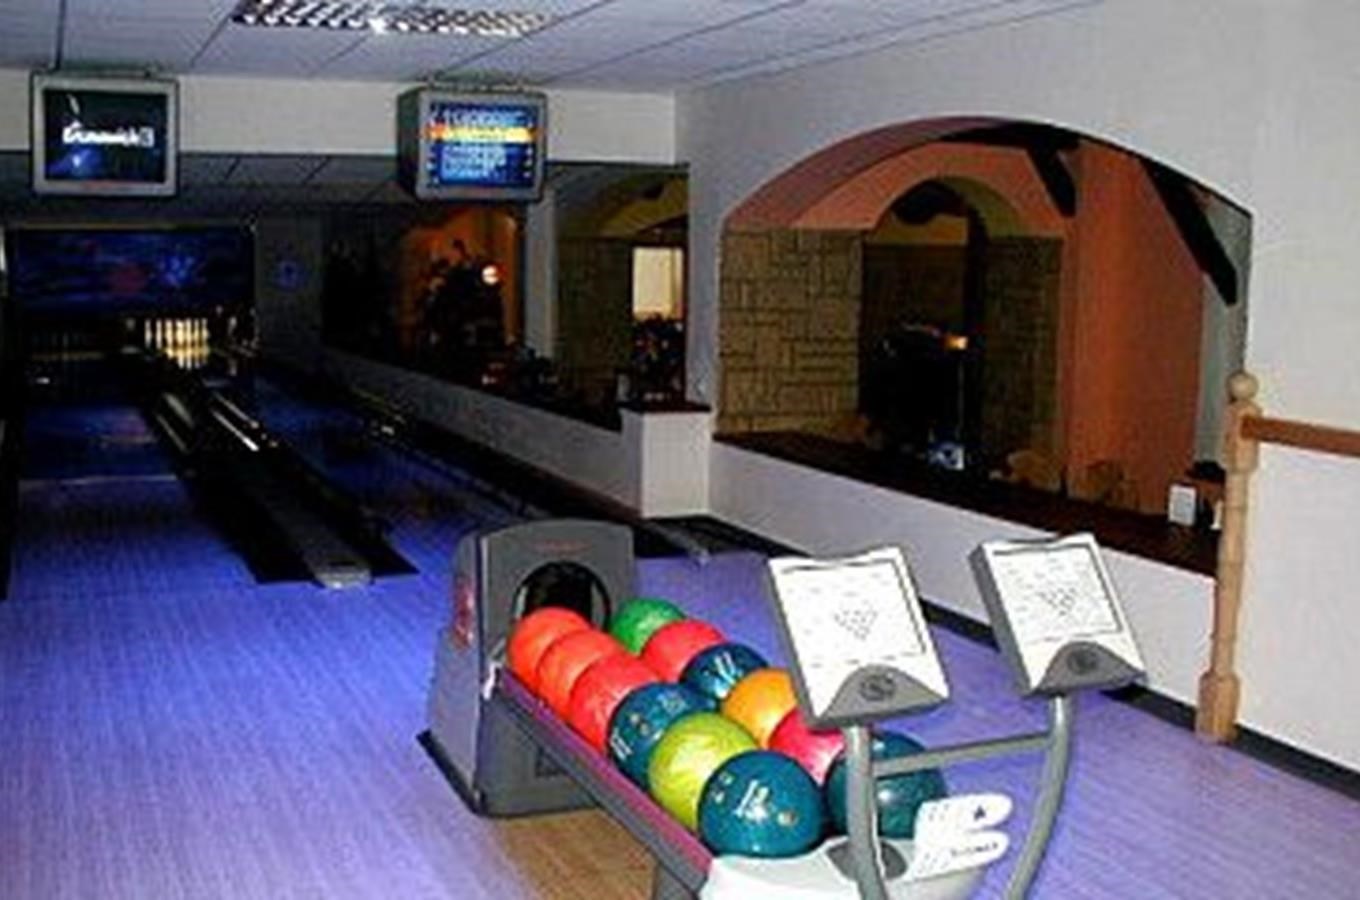 Sportovní a rodinné pobyty nebo bowling v Letovicích